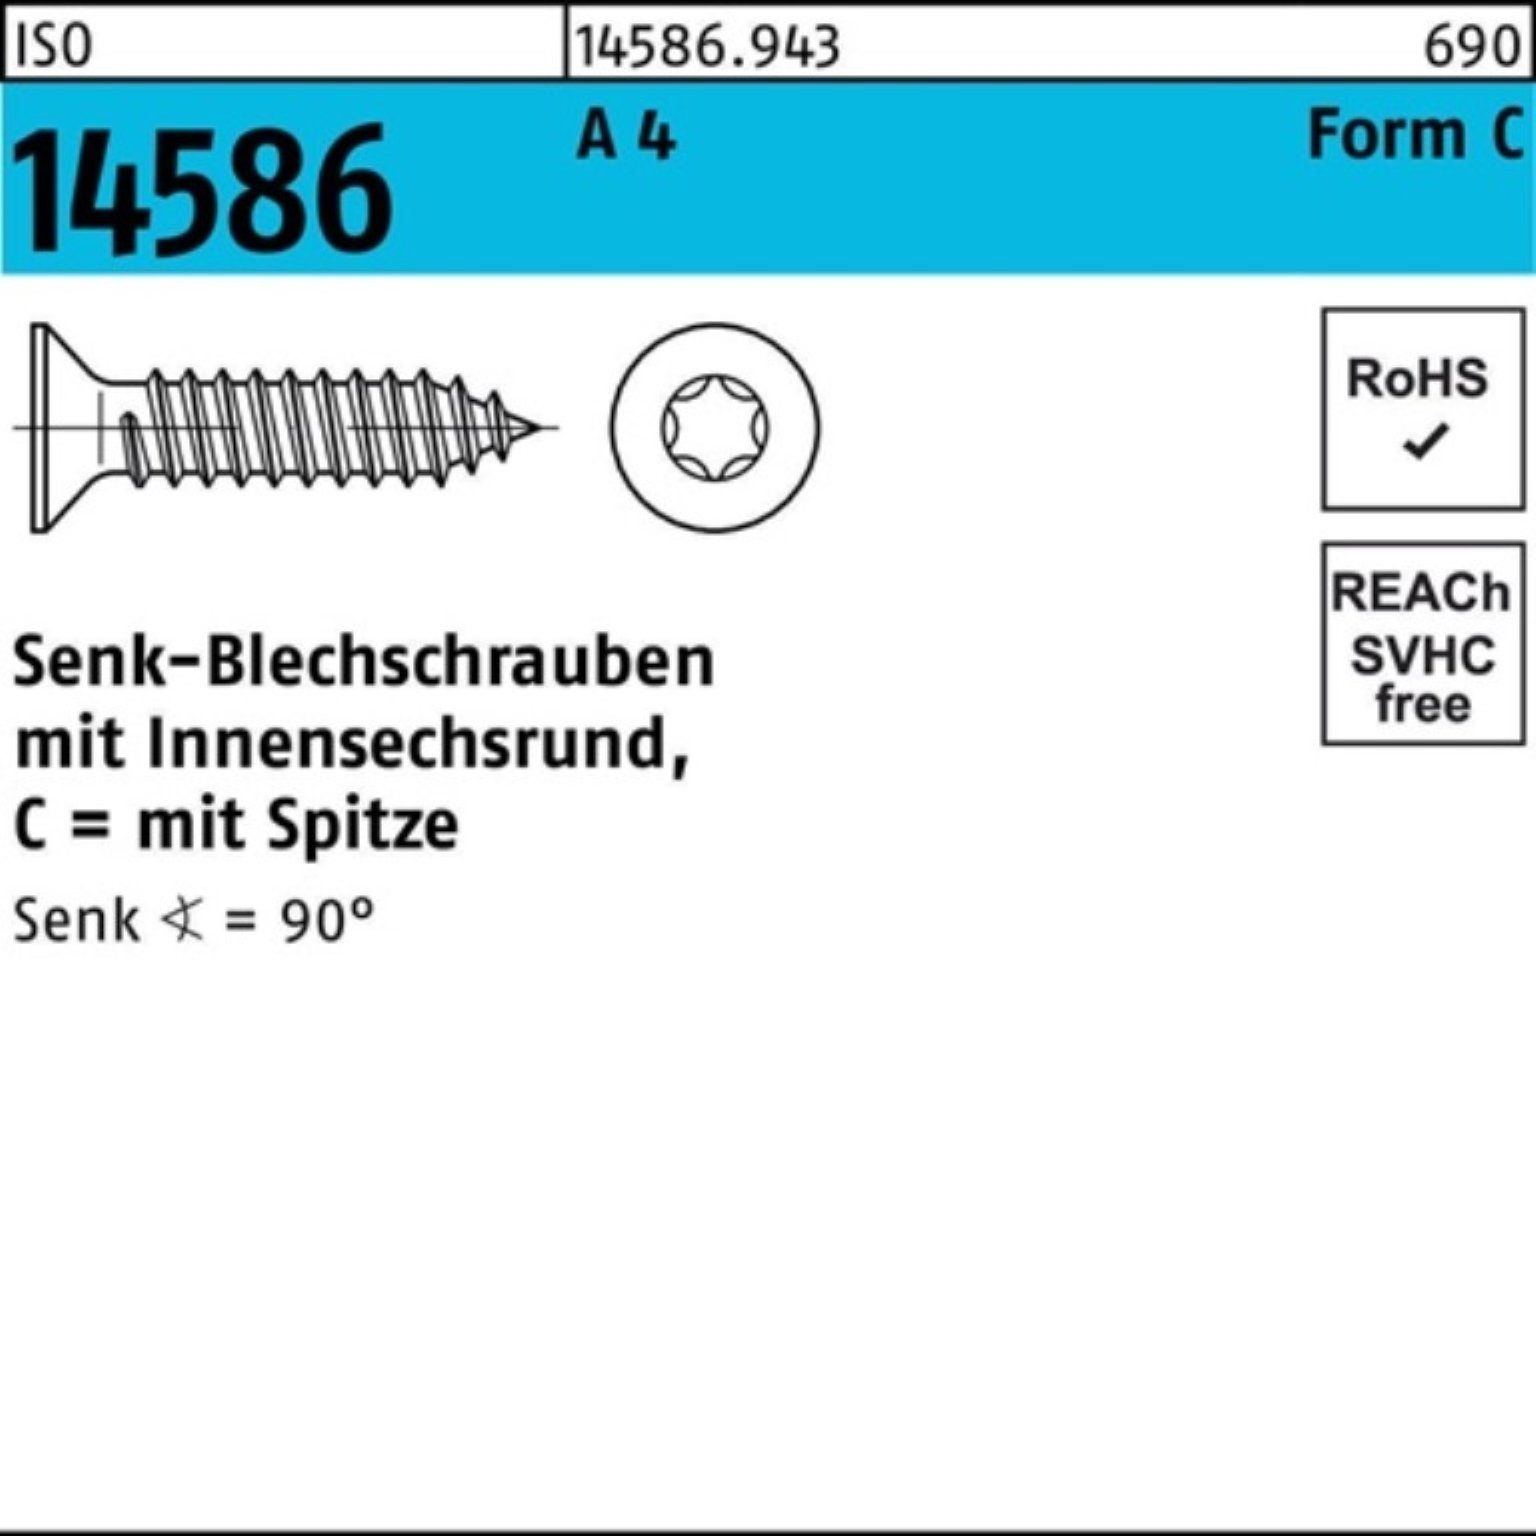 Reyher Schraube 1000er 10 14586 Pack 4,2x 4 Senkblechschraube 9,5-T20 A ISO ISR/Spitze